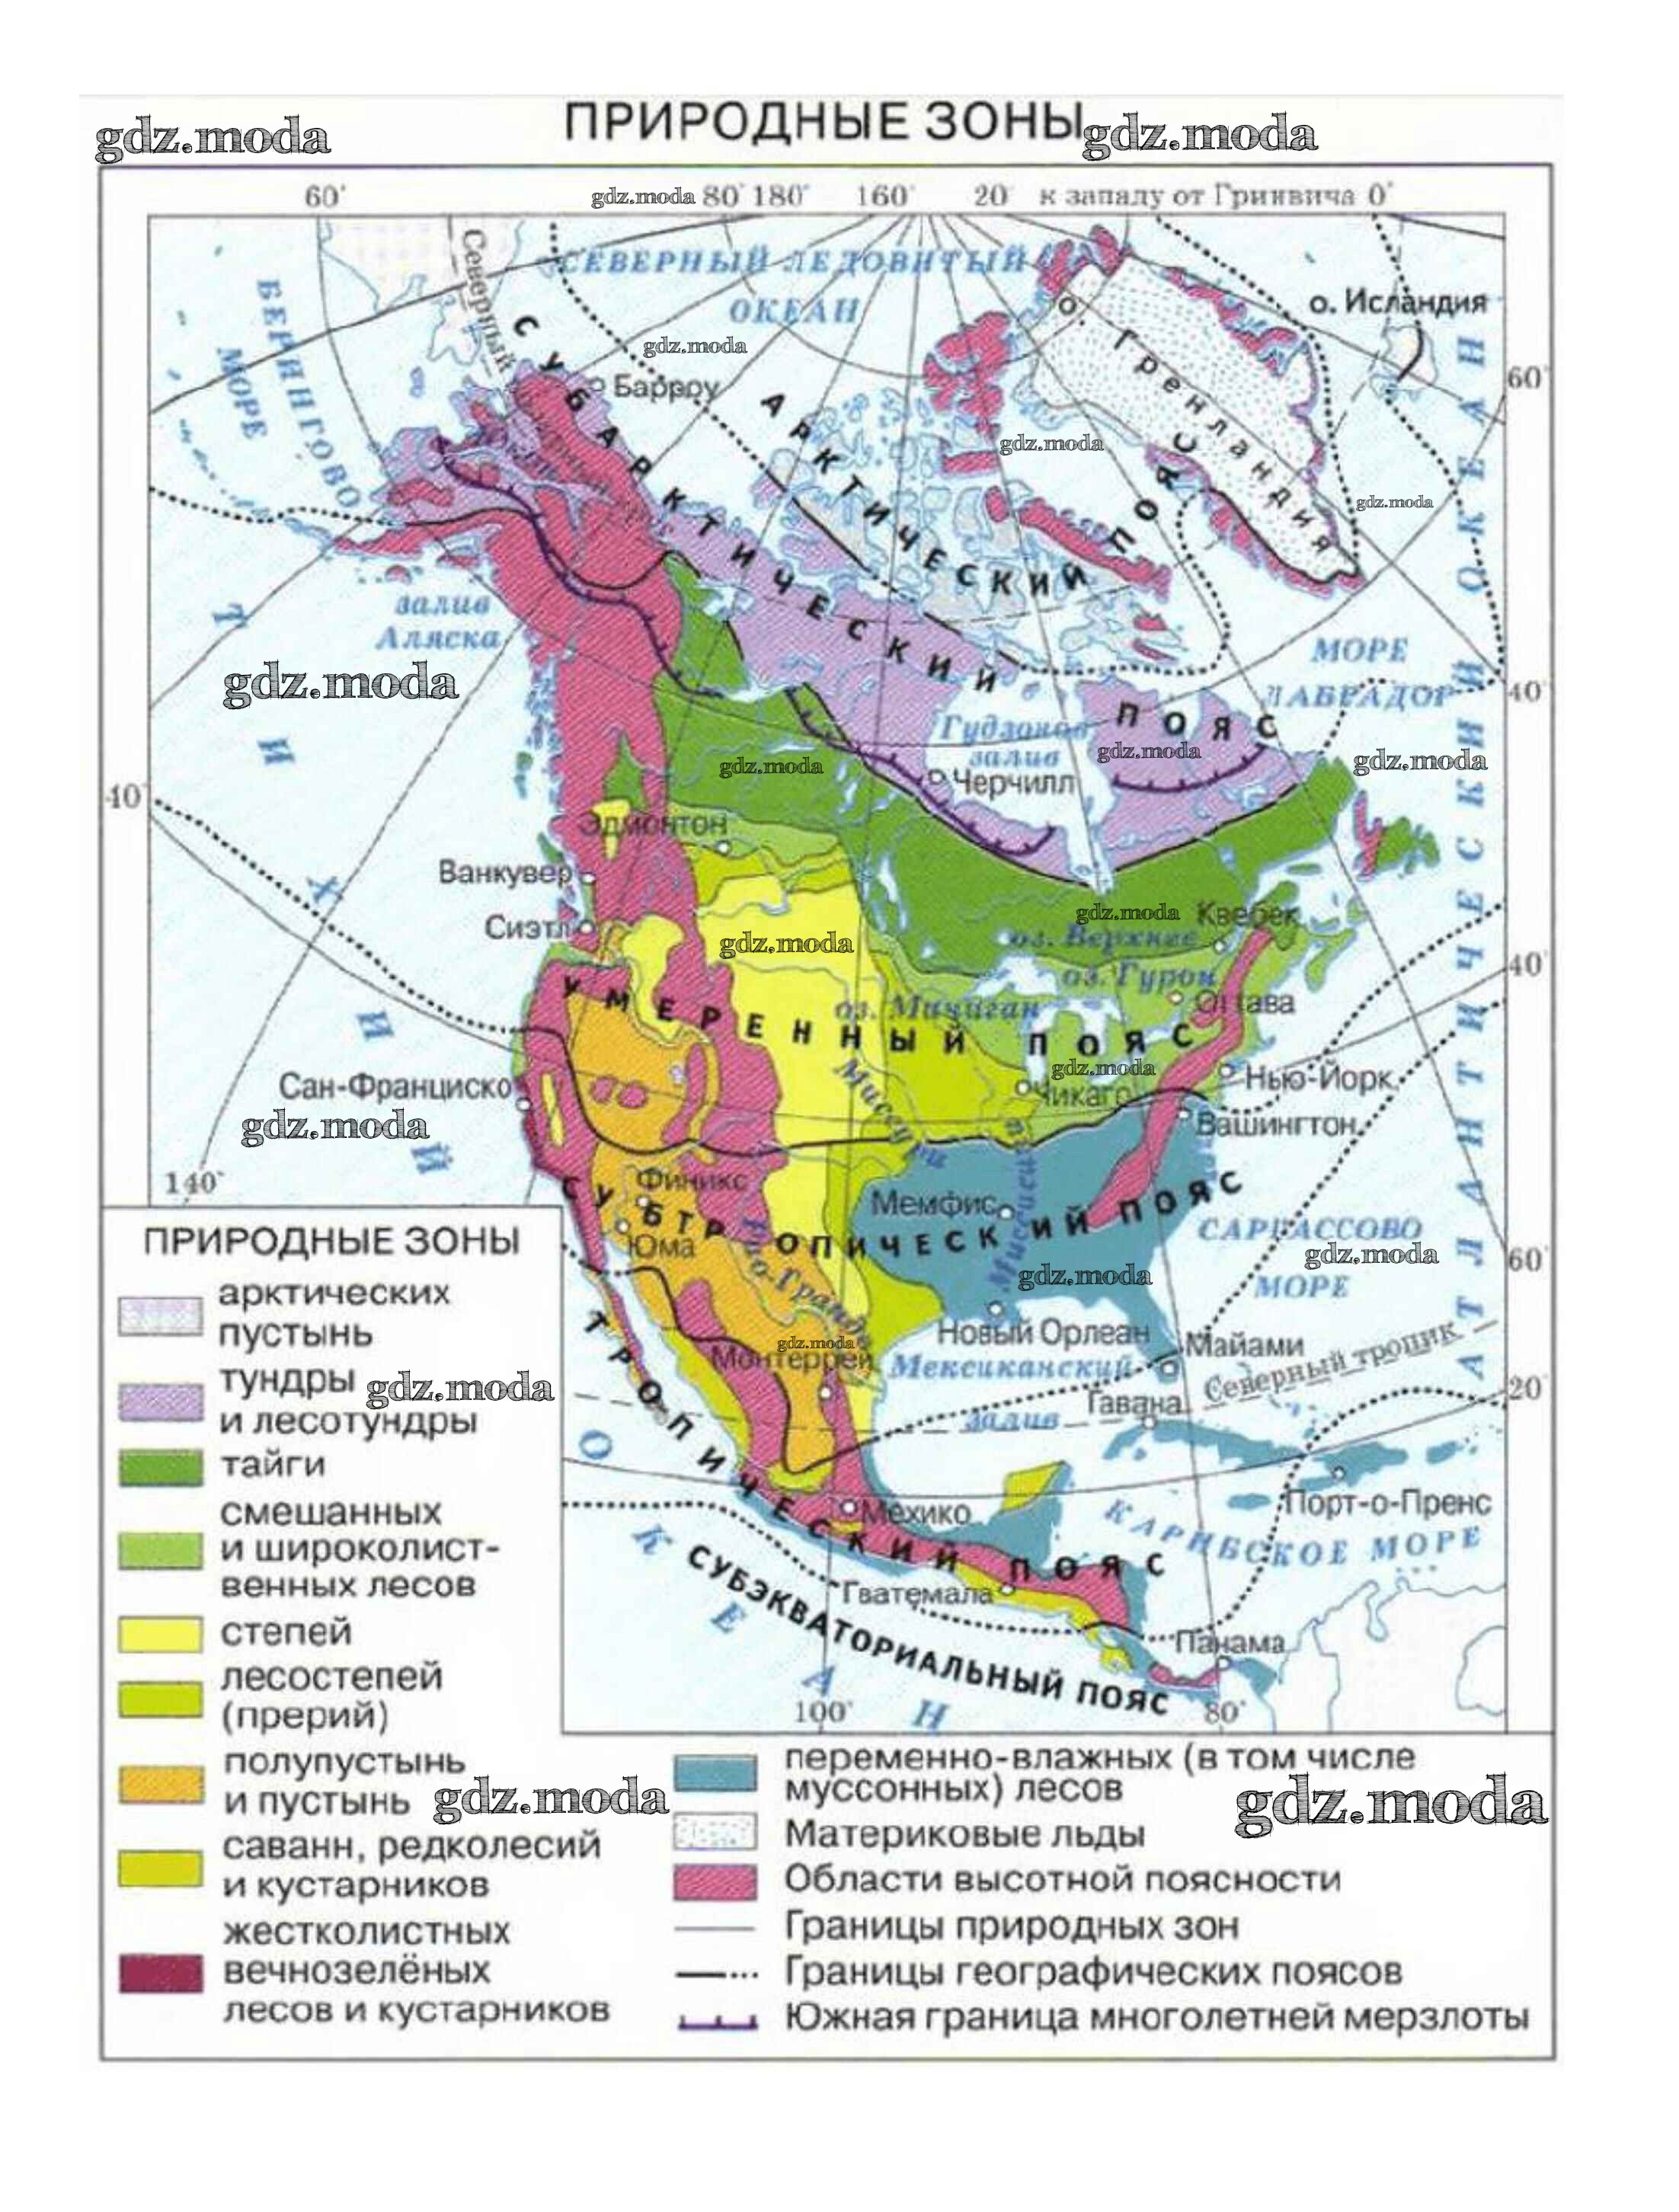 Северная америка какая платформа. Физическая карта Северной Америки природные зоны. Карта природных зон Северной Америки 7 класс география. Карта природные зоны Северной Америки карта. Природные зоны Северной Америки 7 класс атлас.